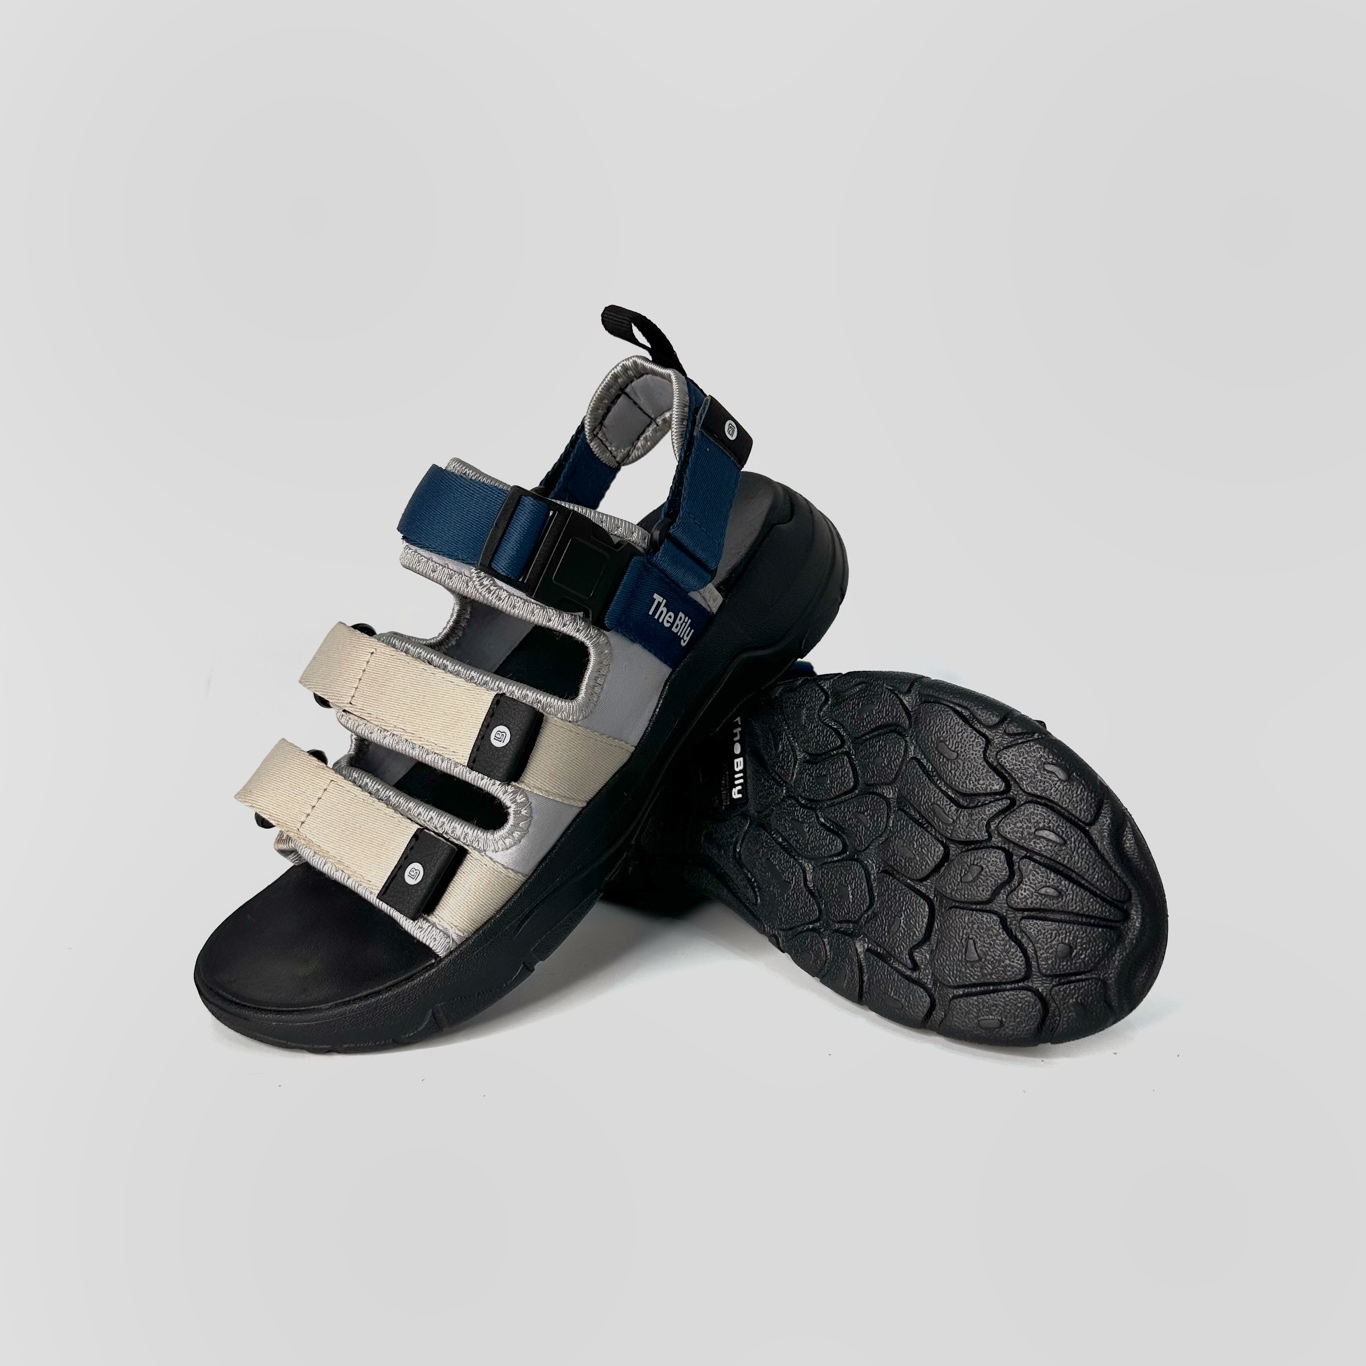 Giày Sandal Nam Nữ Unisex The BiLy Quai Ngang Dây Dù Đế IP Siêu Êm Nhẹ Màu Xanh Kem-BL08